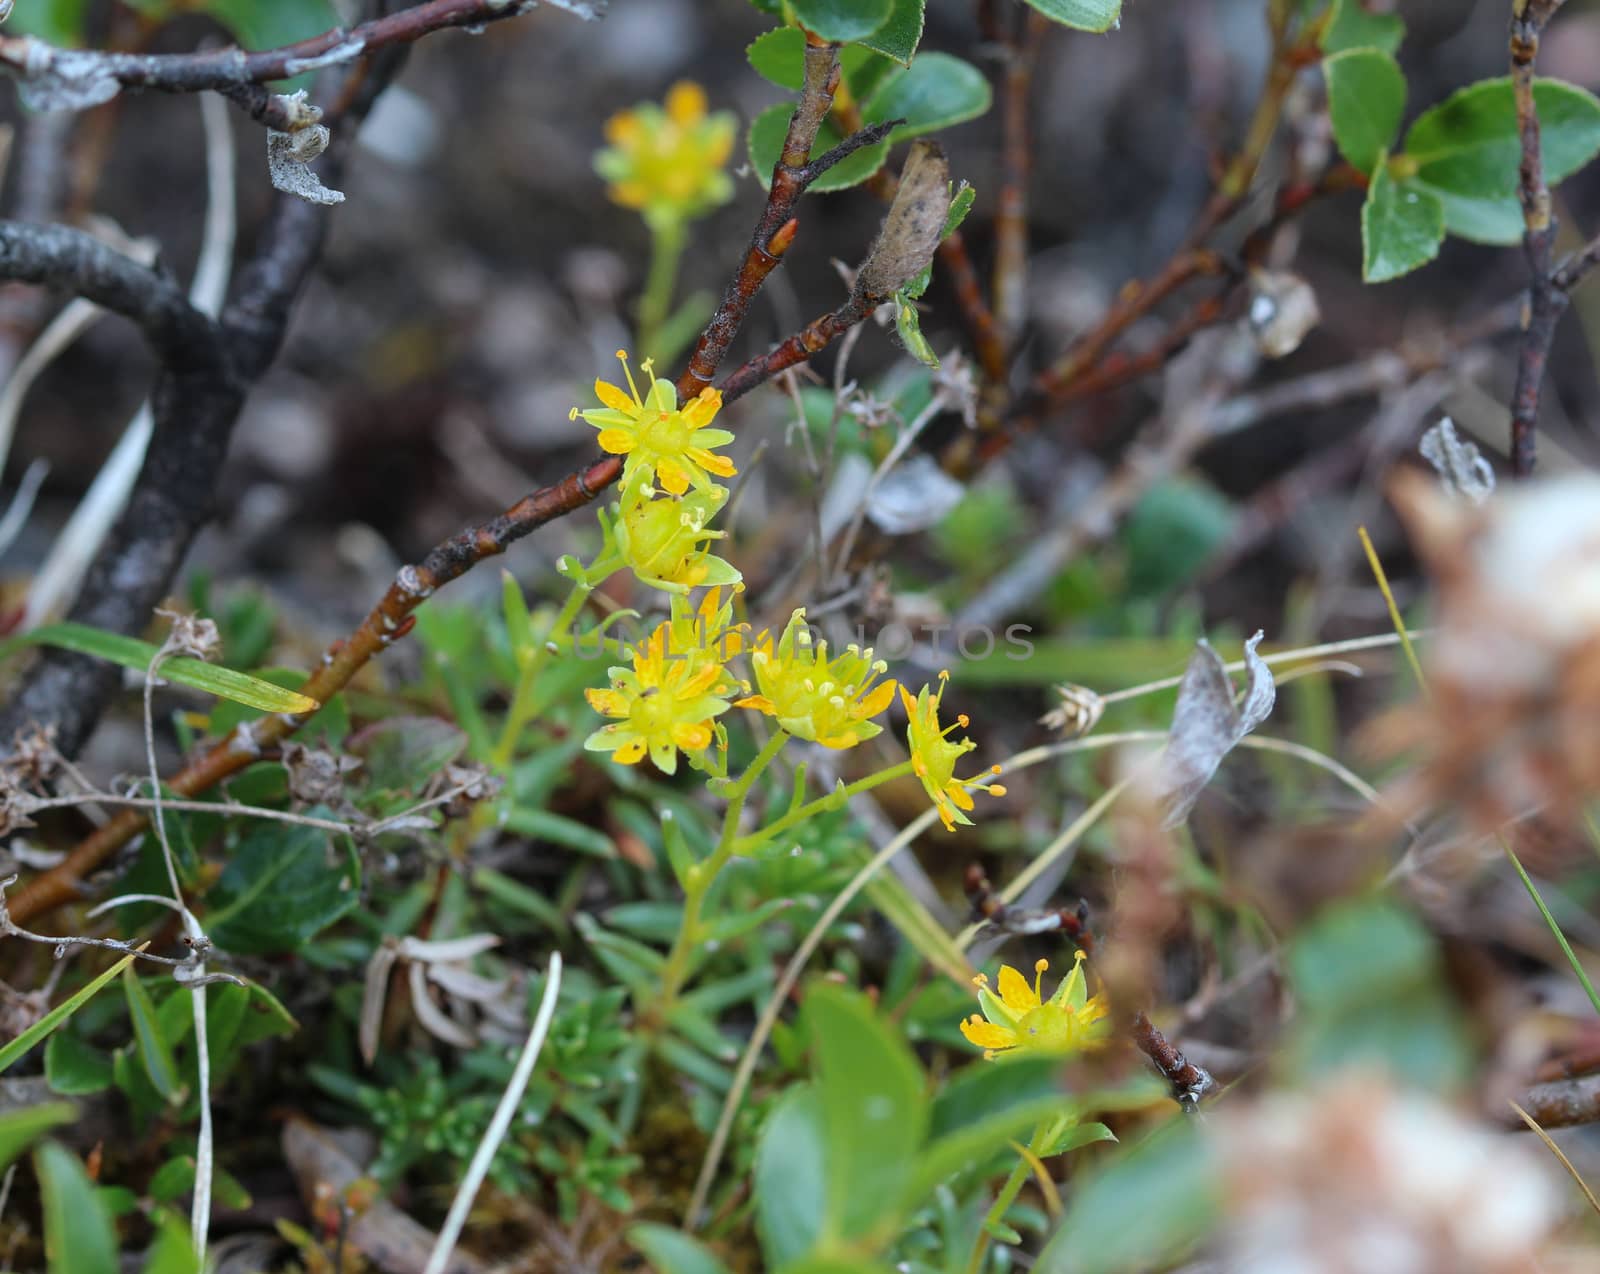 Saxifraga aizoides flower, also known as yellow mountain saxifrage or yellow saxifrage by michaelmeijer